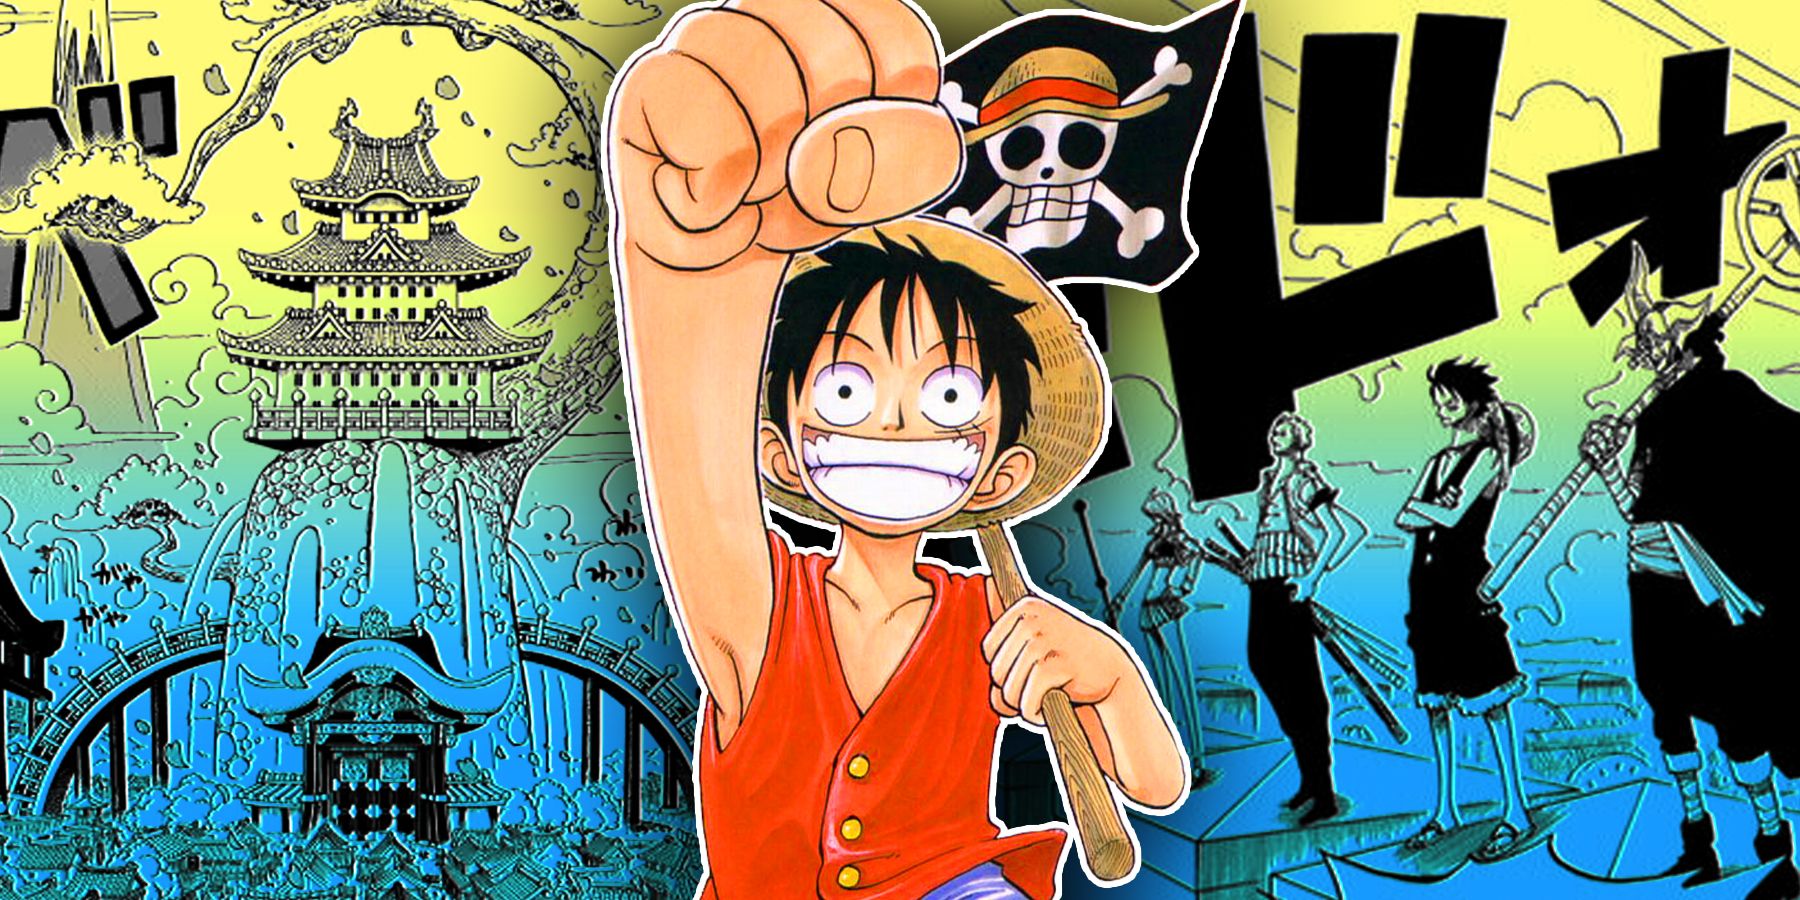 La tierra de Wano, Monkey D. Luffy y los Piratas de Sombrero de Paja en Enies Lobby como se muestra en el manga One Piece.